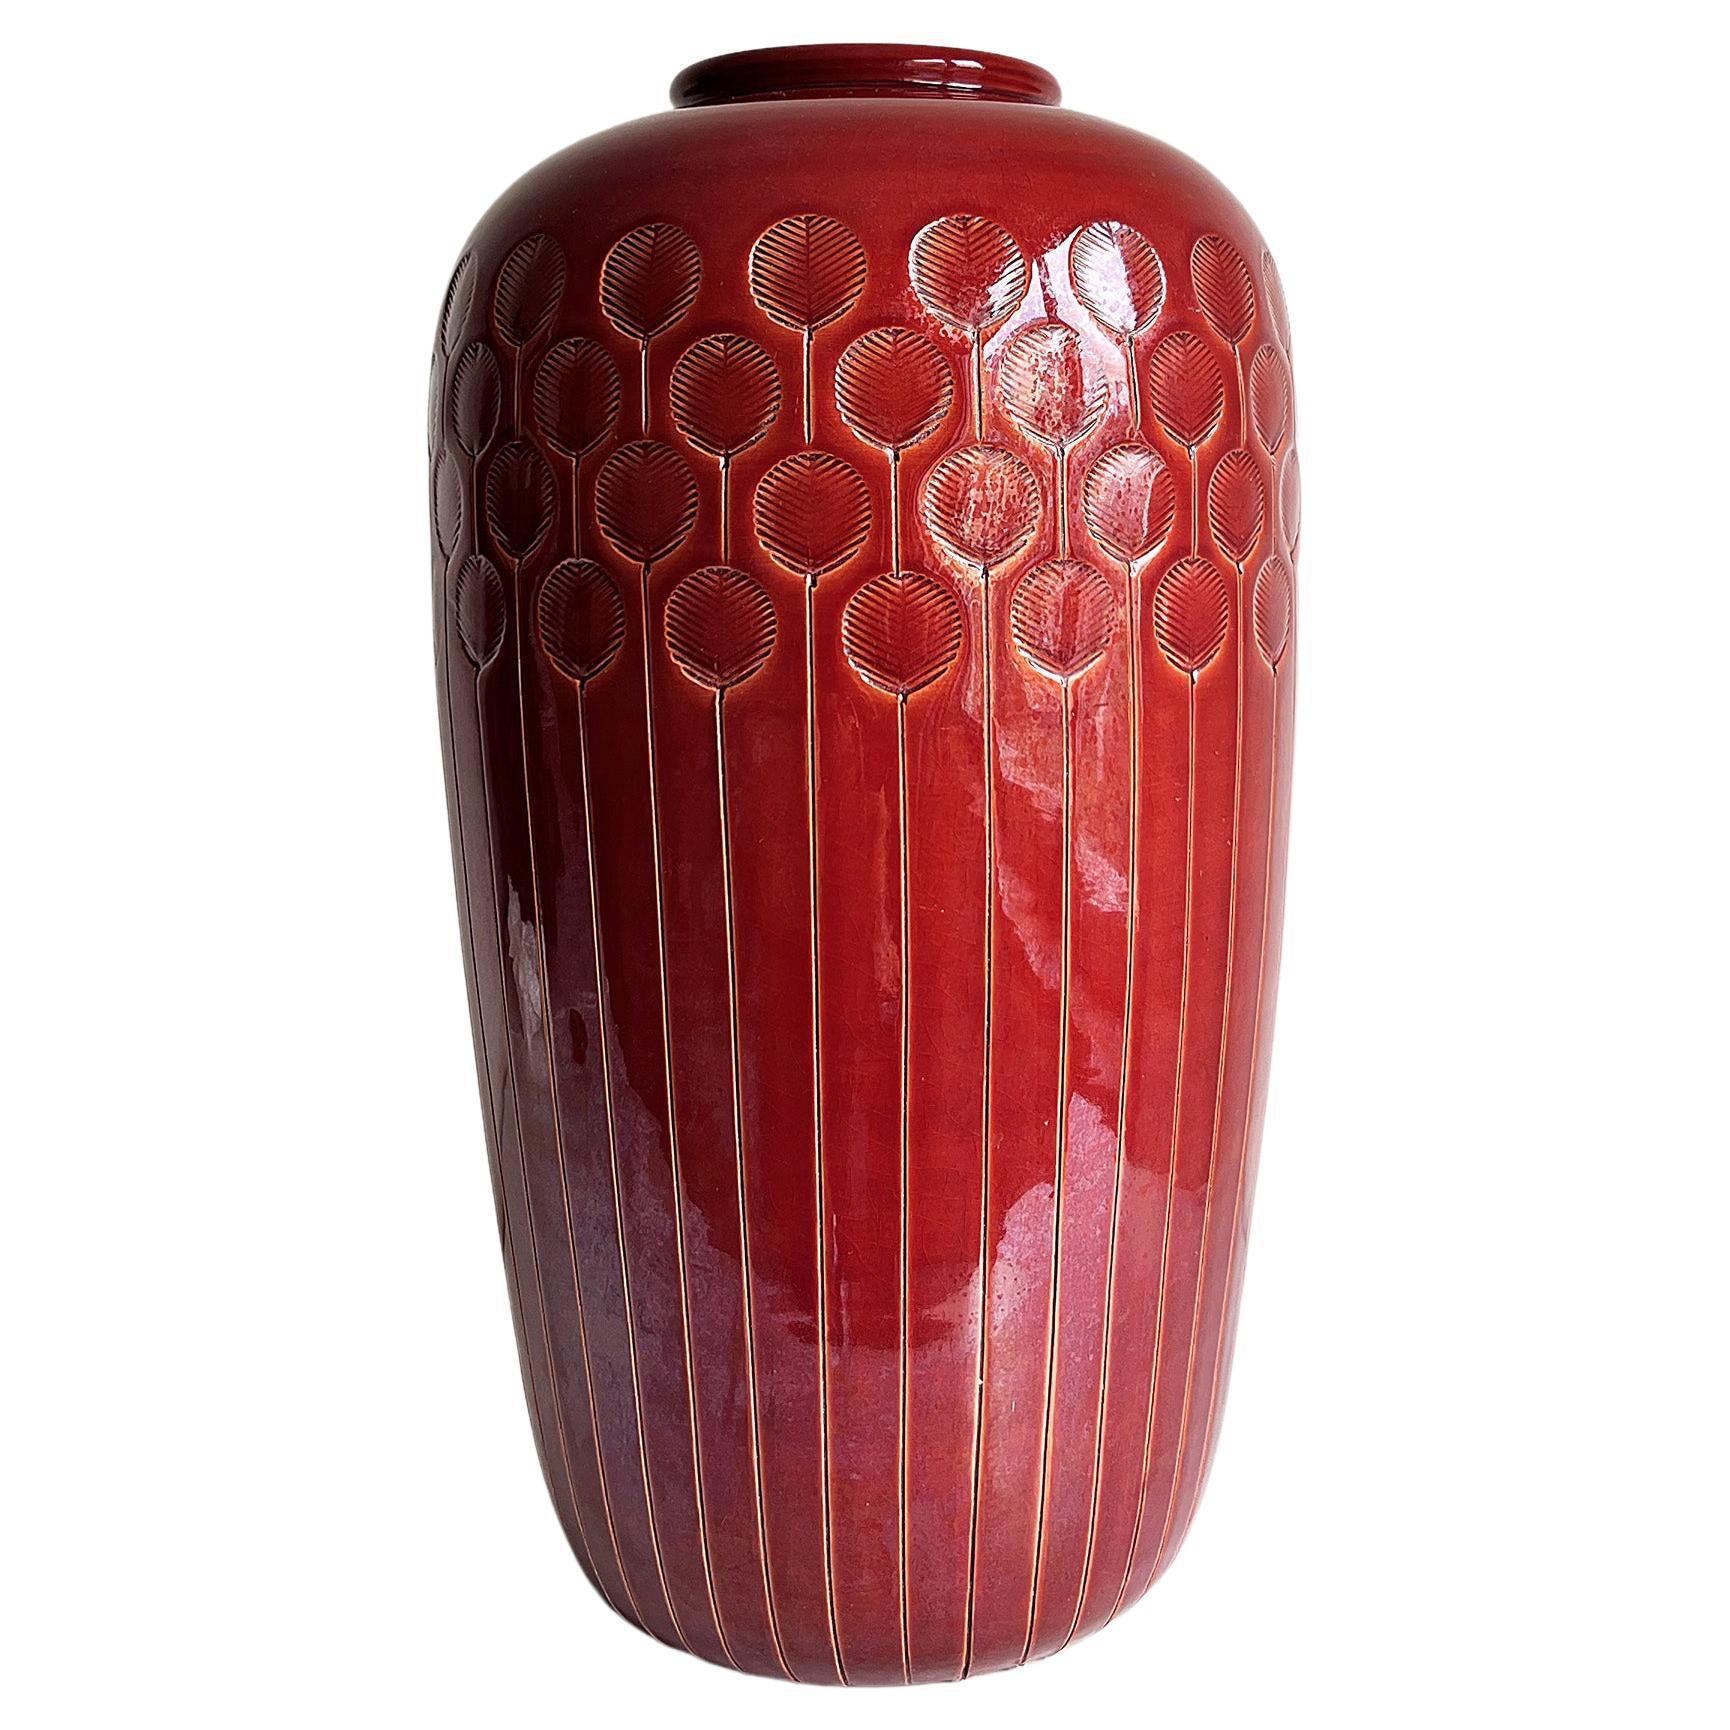 Vase de sol italien en céramique rouge rouille par Flavia/Bitossi, années 1970